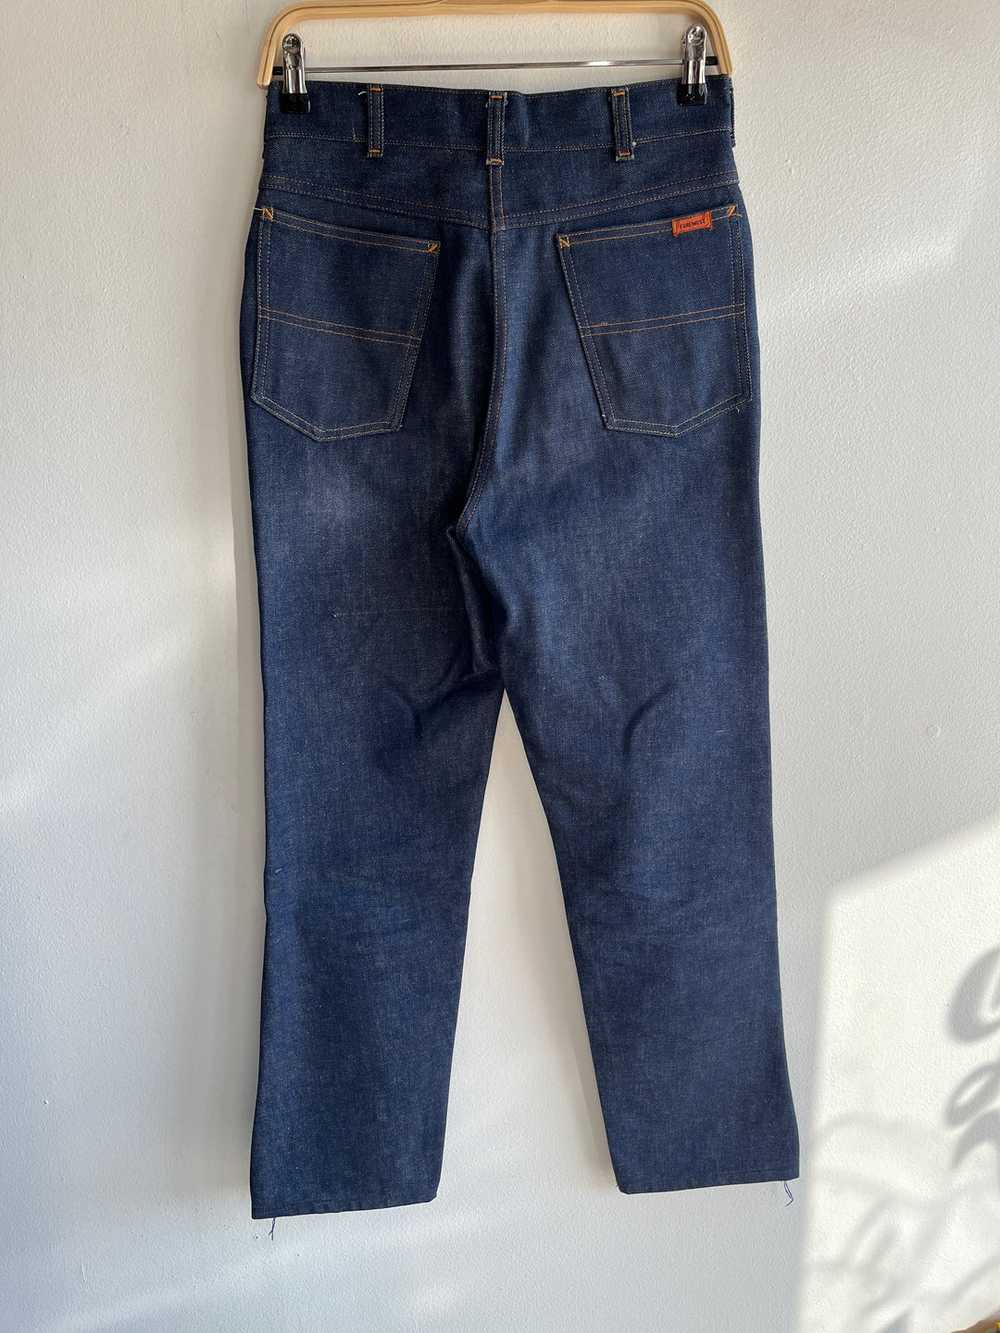 Vintage 1950’s Deadstock Foremost Denim Jeans - image 4